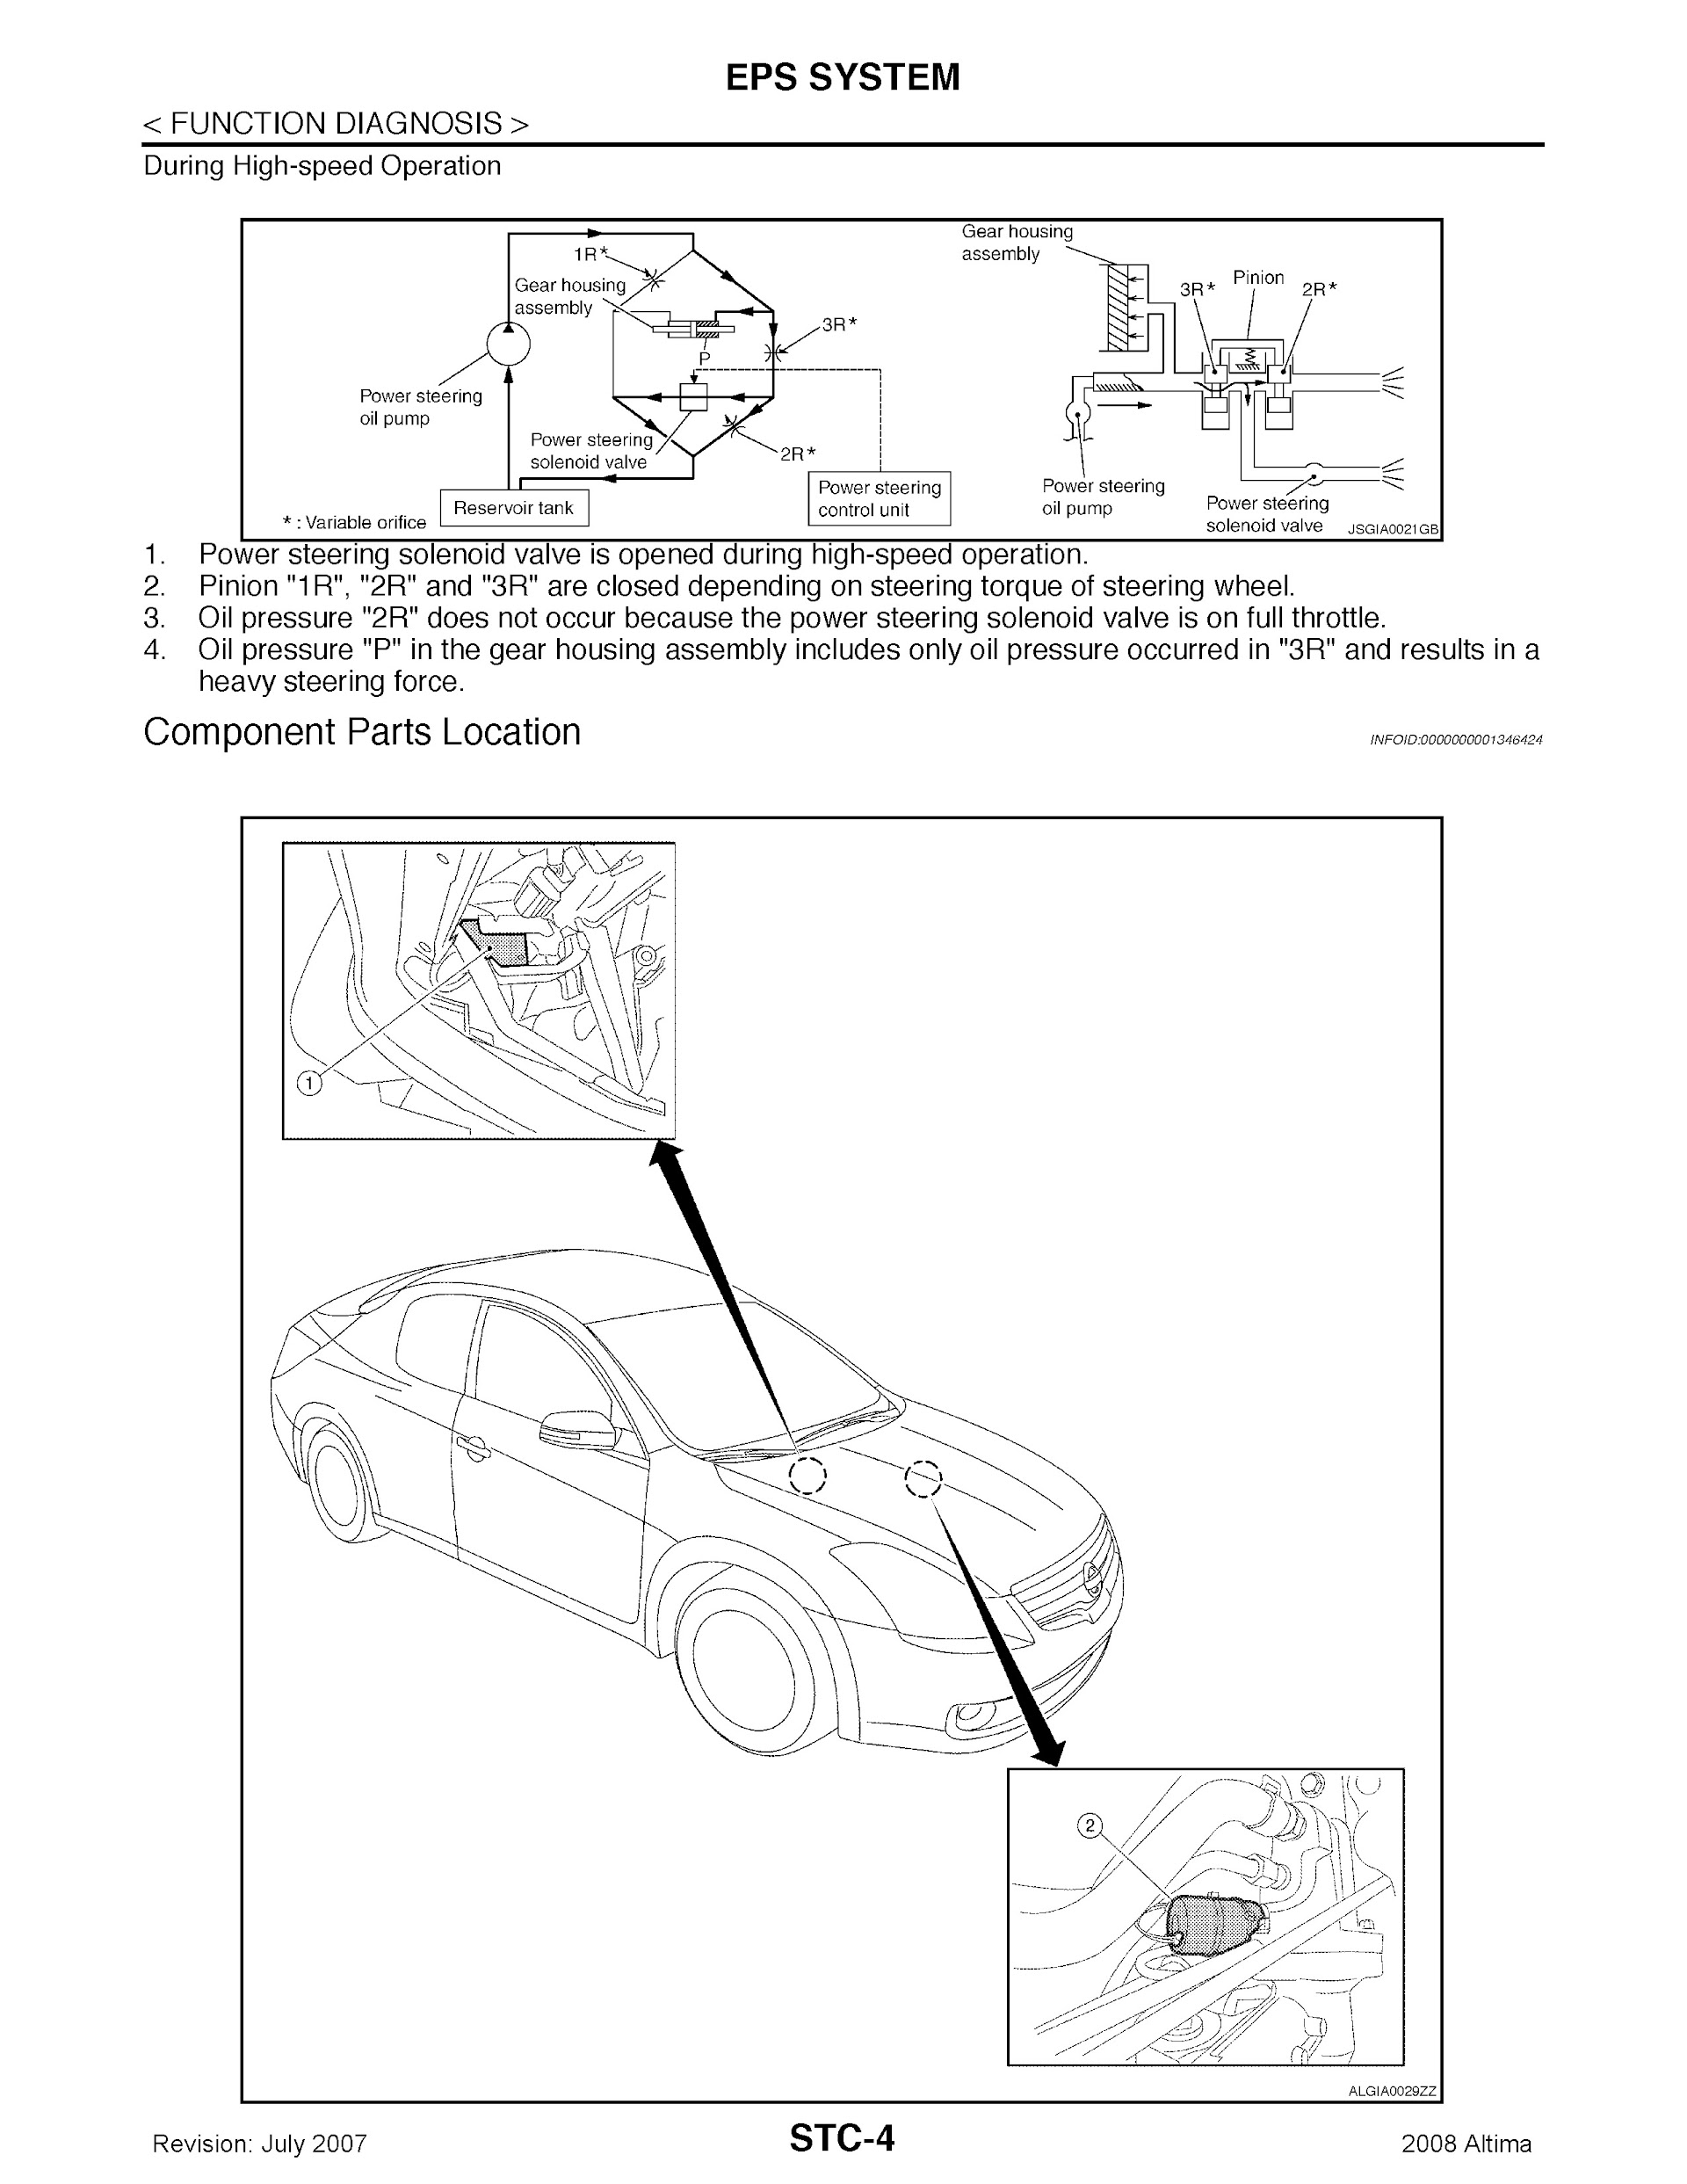 Download 2008 Nissan Altima Repair Manual.